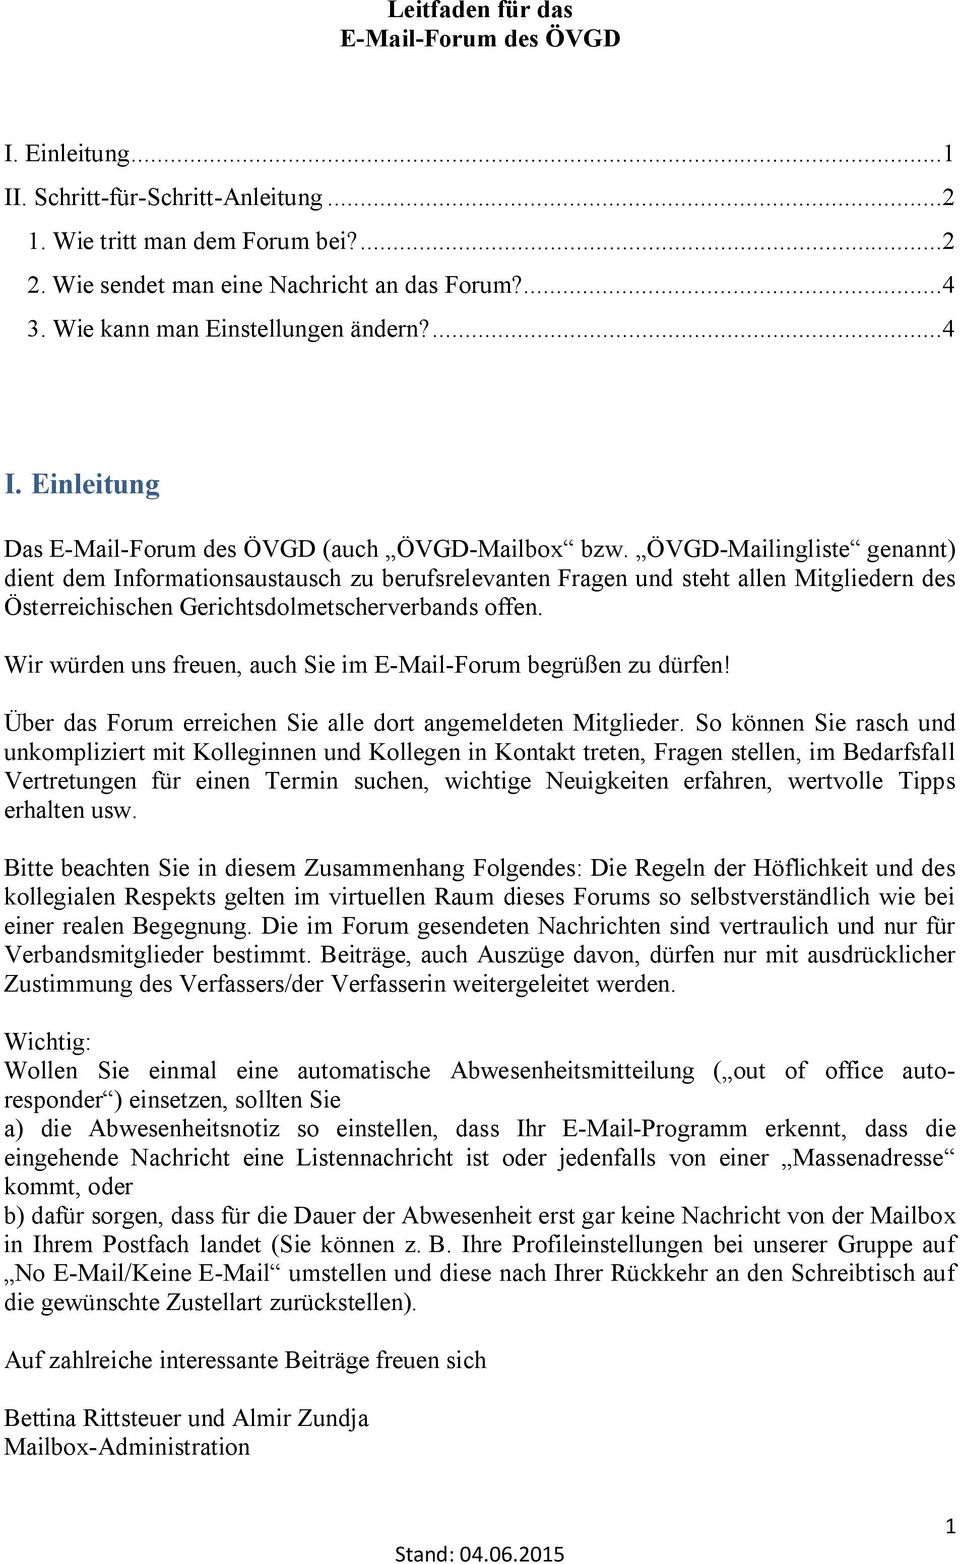 ÖVGD-Mailingliste genannt) dient dem Informationsaustausch zu berufsrelevanten Fragen und steht allen Mitgliedern des Österreichischen Gerichtsdolmetscherverbands offen.